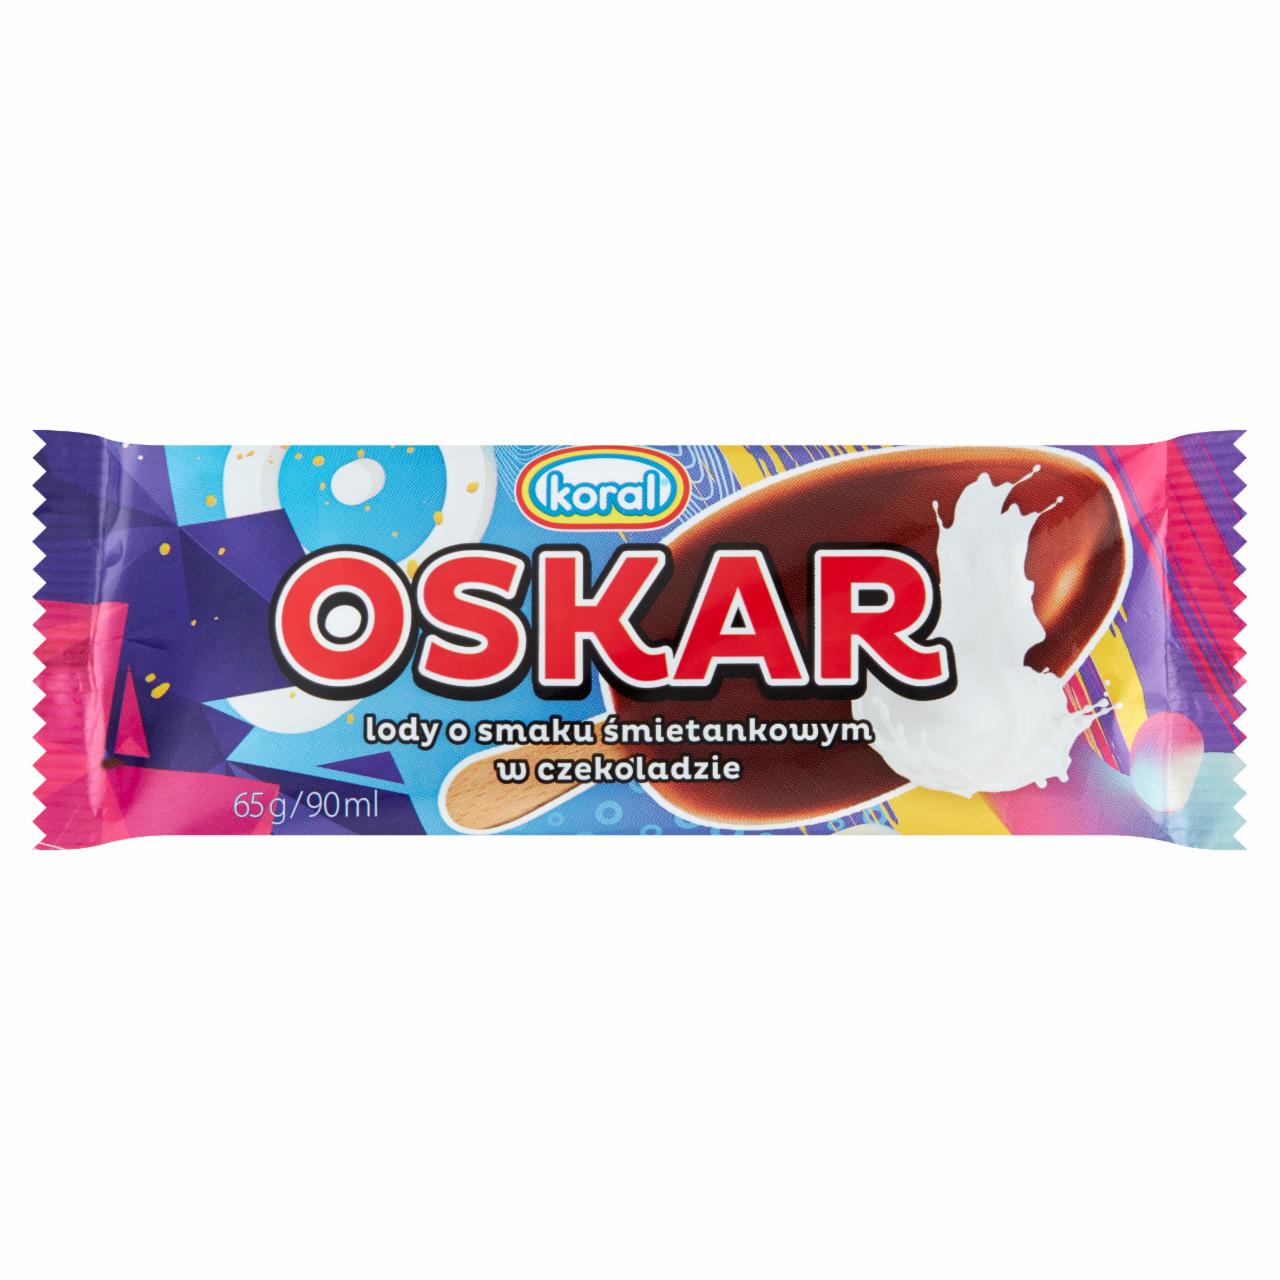 Zdjęcia - Oskar lody o smaku śmietankowym w czekoladzie Koral